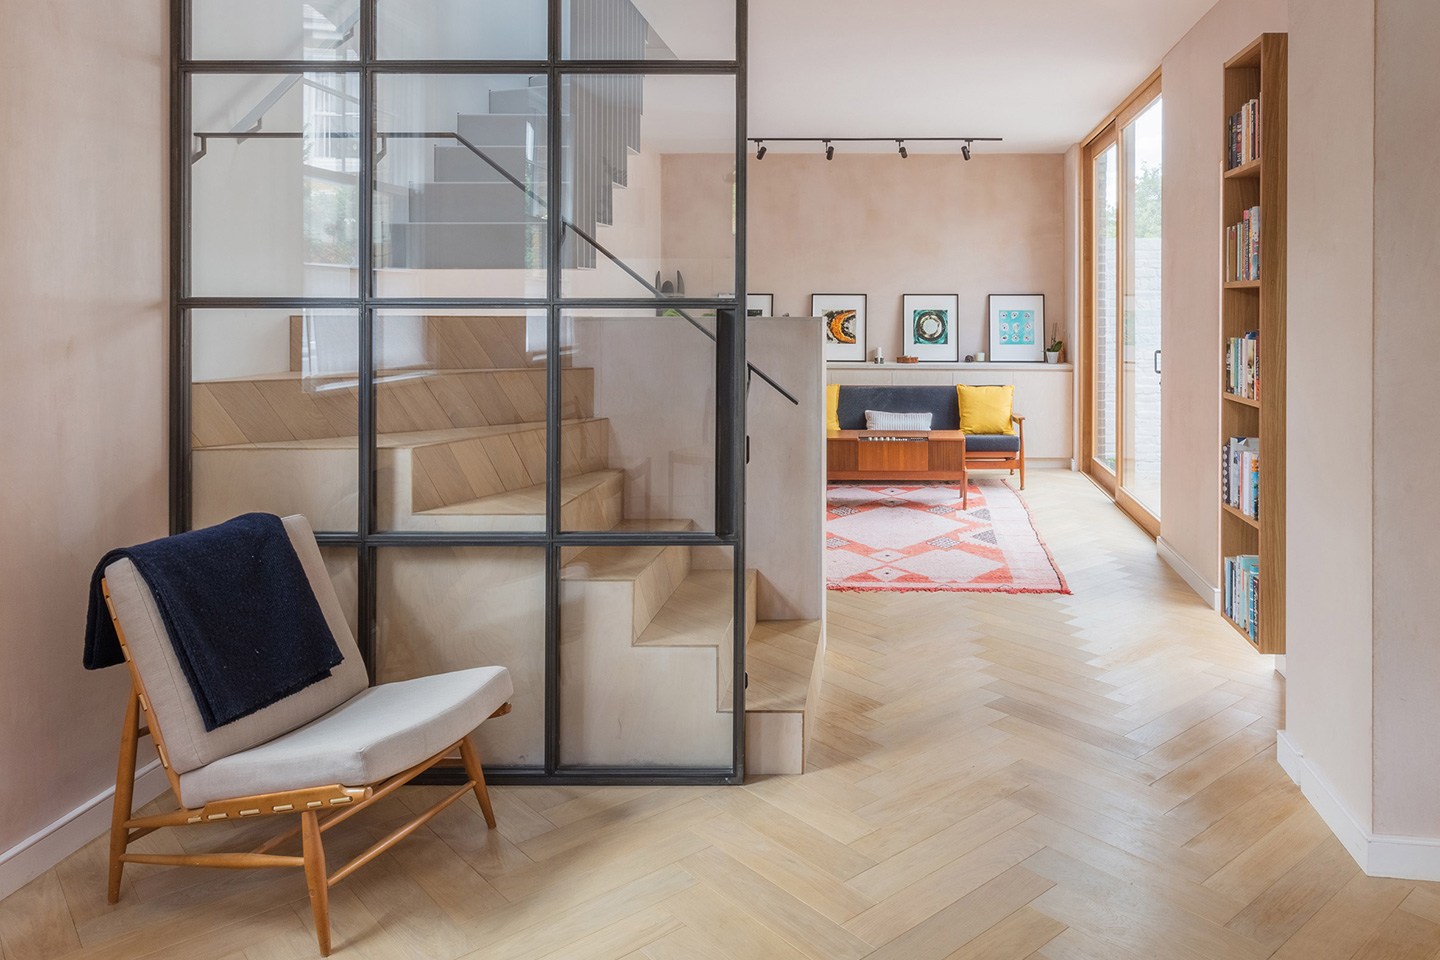 Частный дом в Лондоне – проект Vine Architecture Studio